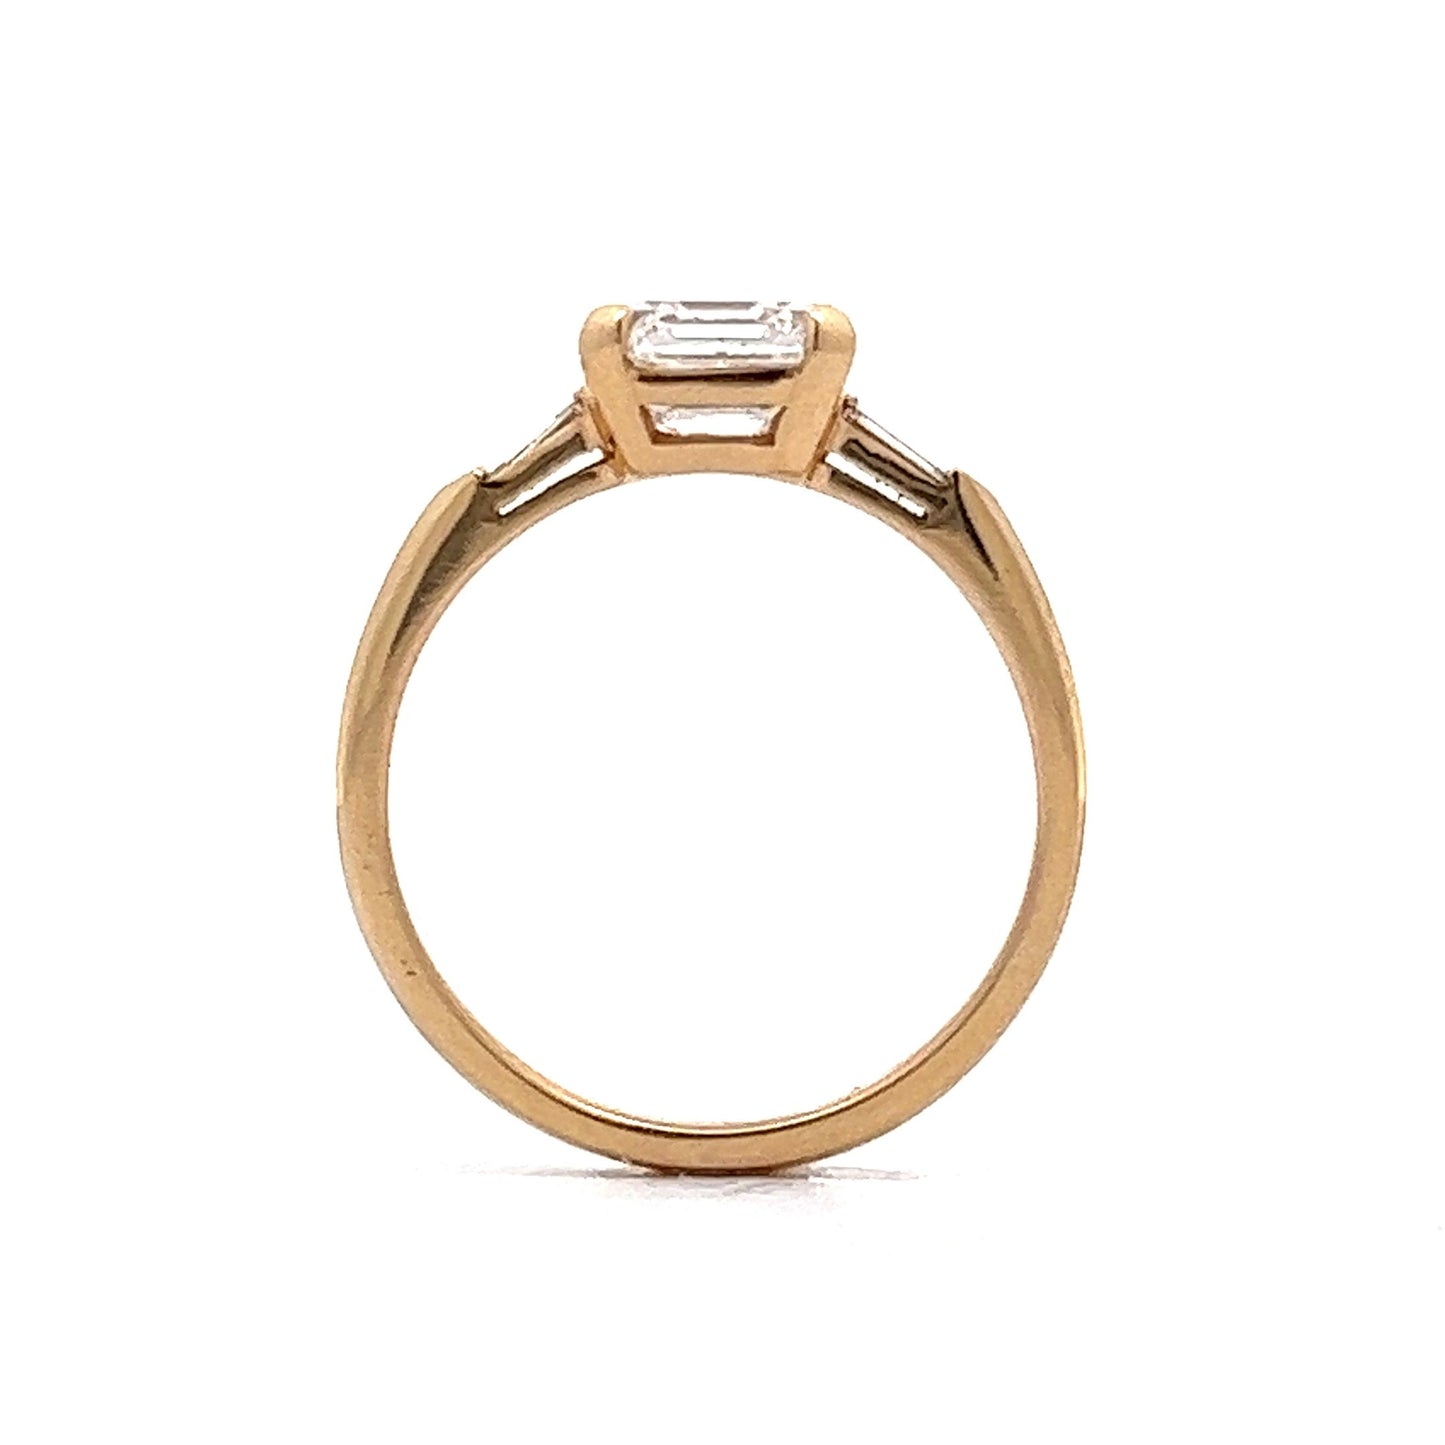 1.50 Asscher Cut Diamond Engagement Ring in 14k Yellow Gold